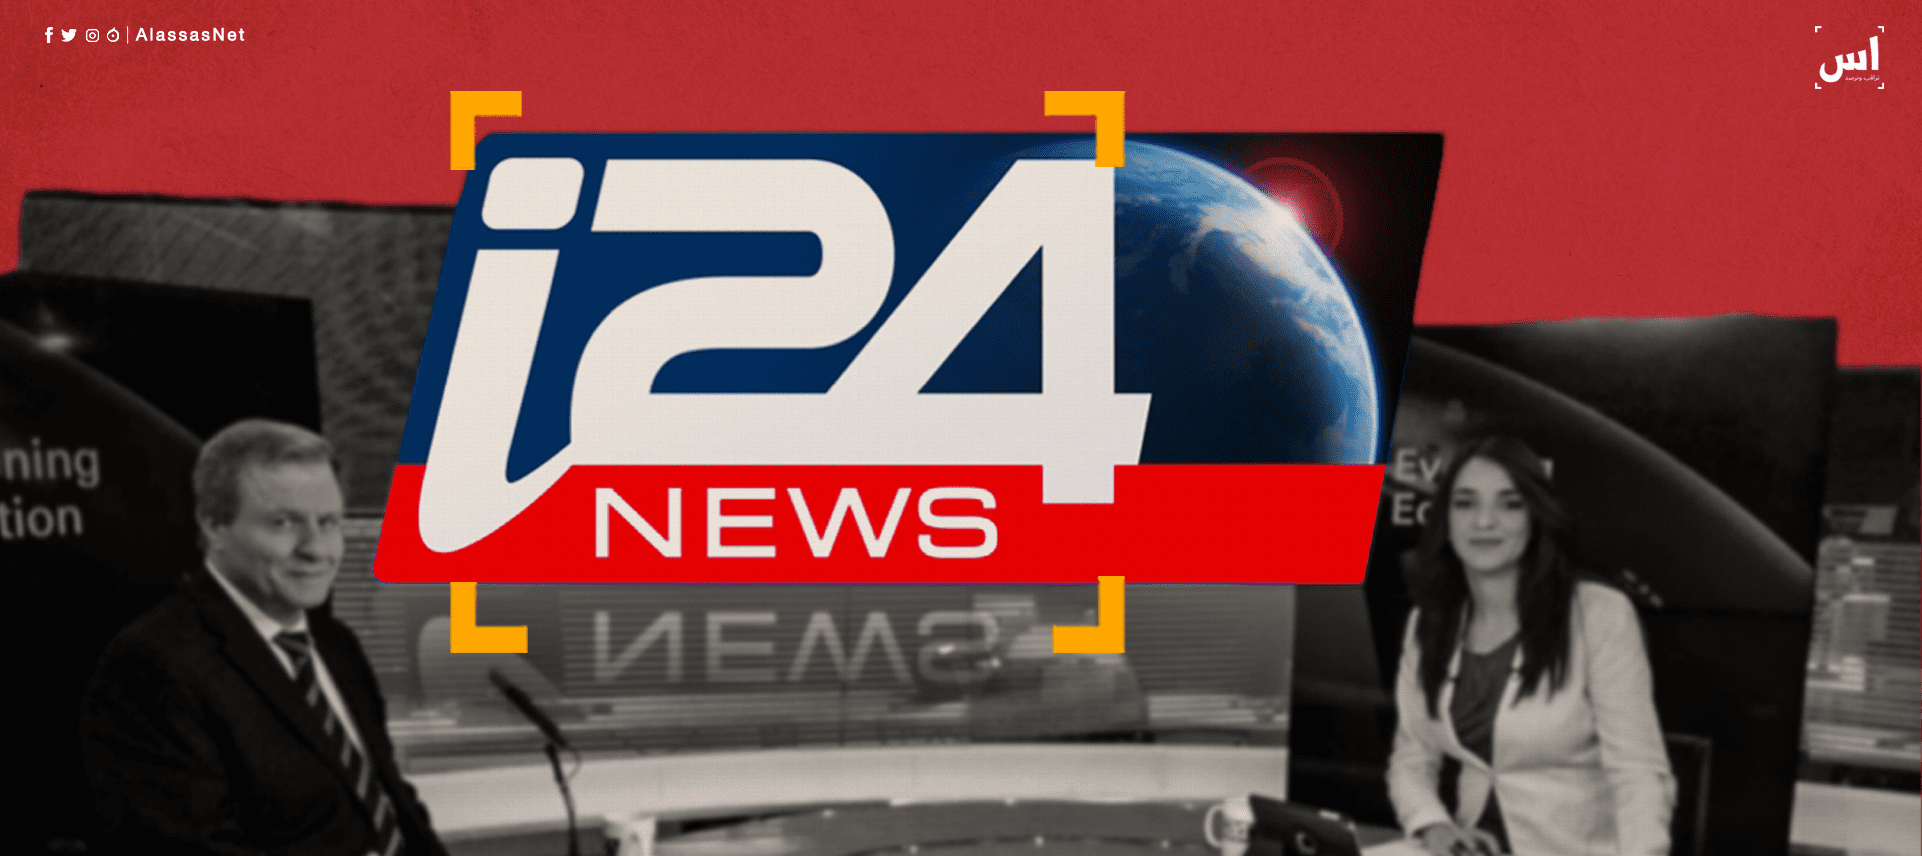 قناة I24 العبرية الحرس الثوري حاول اغتيال رجل أعمال إسرائيلي داخل جورجيا